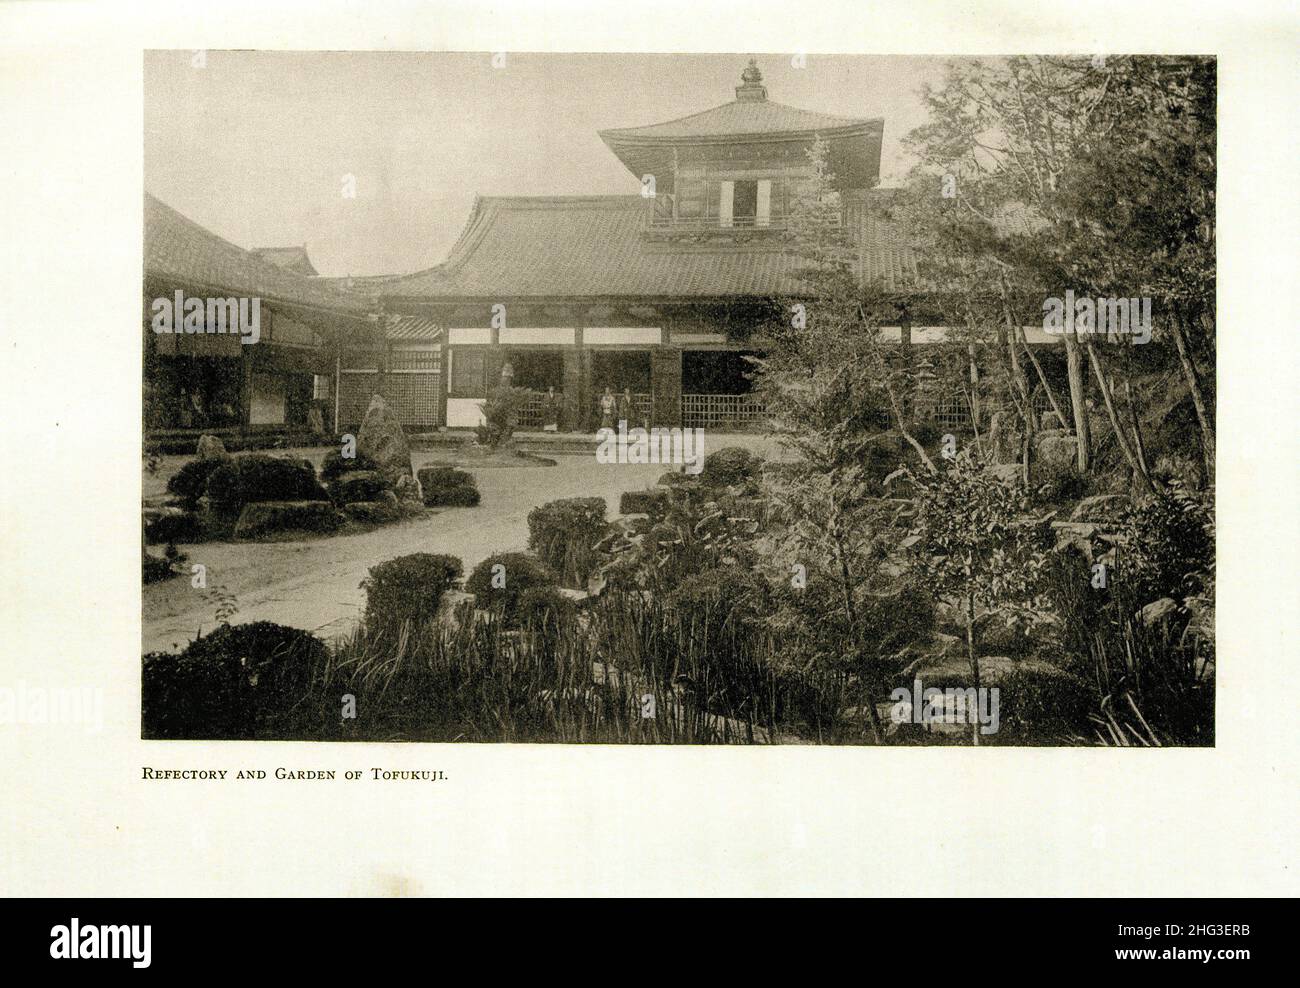 Foto de archivo del refectorio y jardín del templo de Tofukuji. Japón Reproducción de la ilustración del libro de 1912 Tofuku-ji (東福寺) es un templo budista en Hi Foto de stock